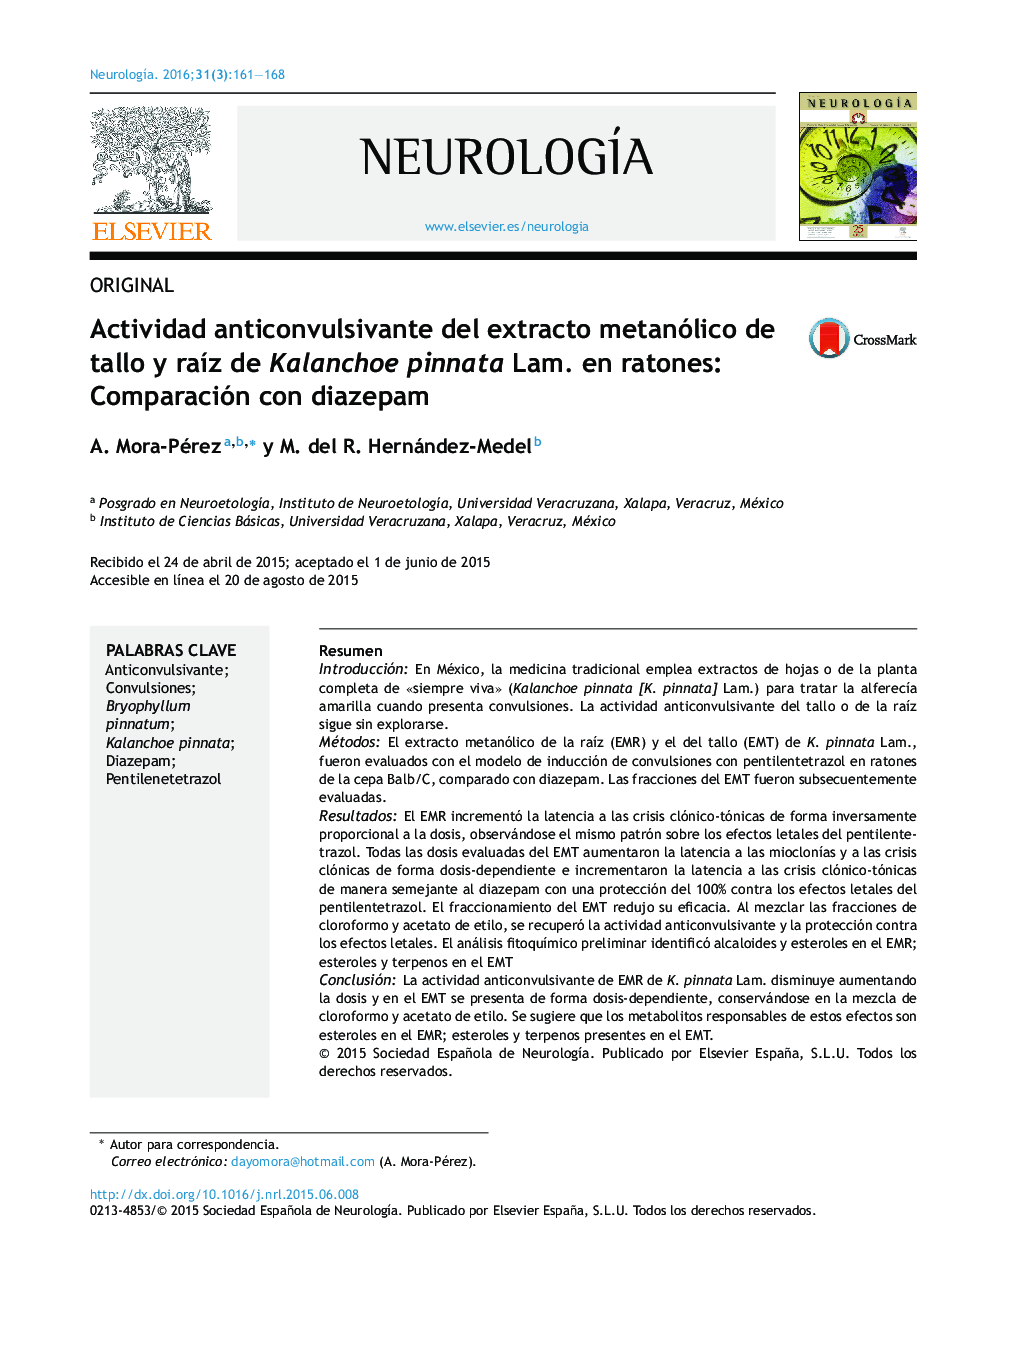 Actividad anticonvulsivante del extracto metanólico de tallo y raíz de Kalanchoe pinnata Lam. en ratones: Comparación con diazepam